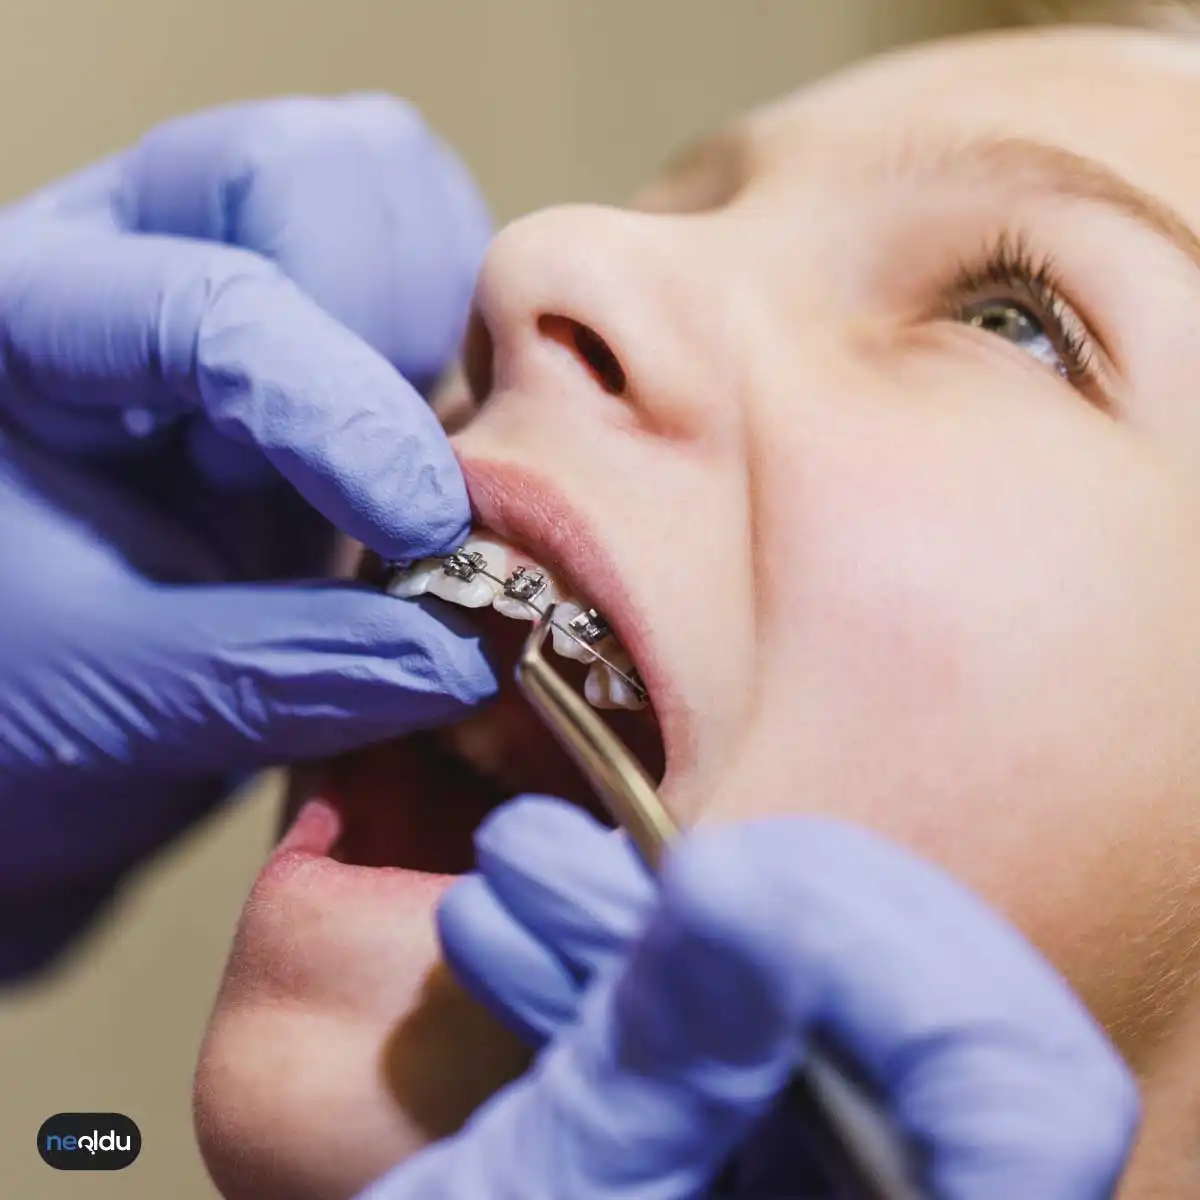 Diş Teli Nedir, Nasıl Takılır, Takılmadan Önce Ne Yapılır?